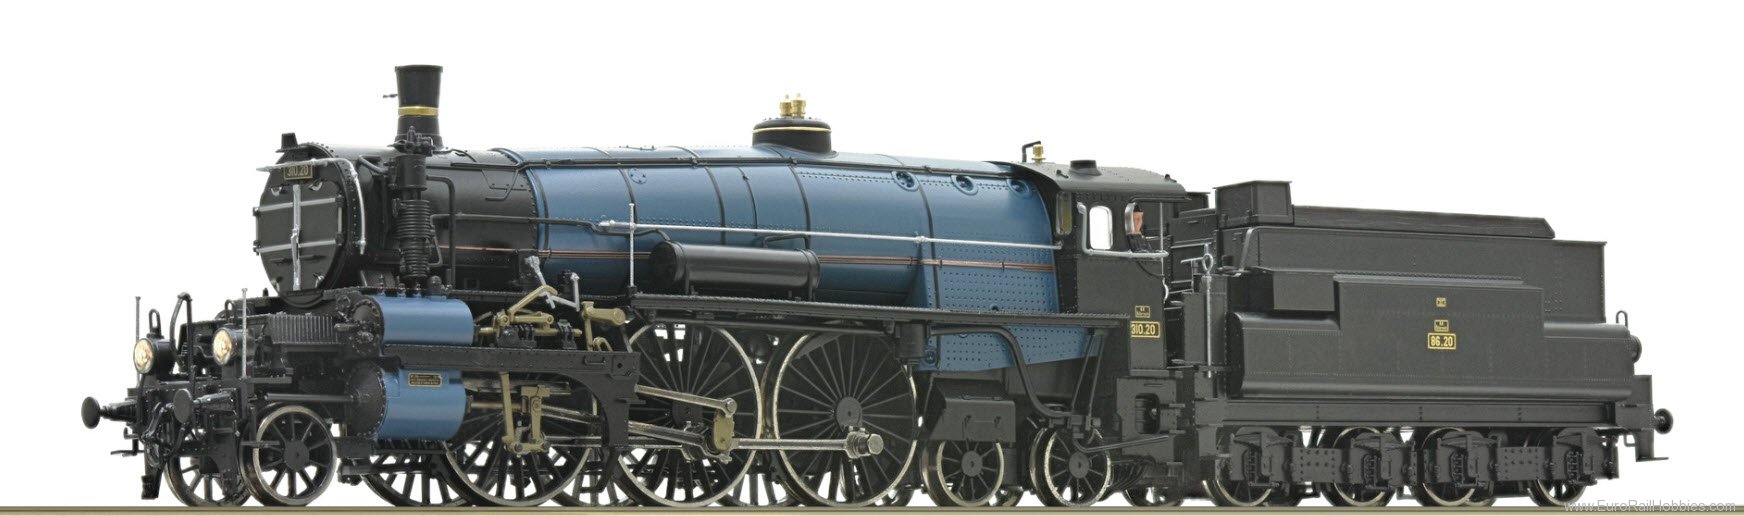 Roco 7120012 Steam locomotive 310.20, BBÃ (AC Digital S